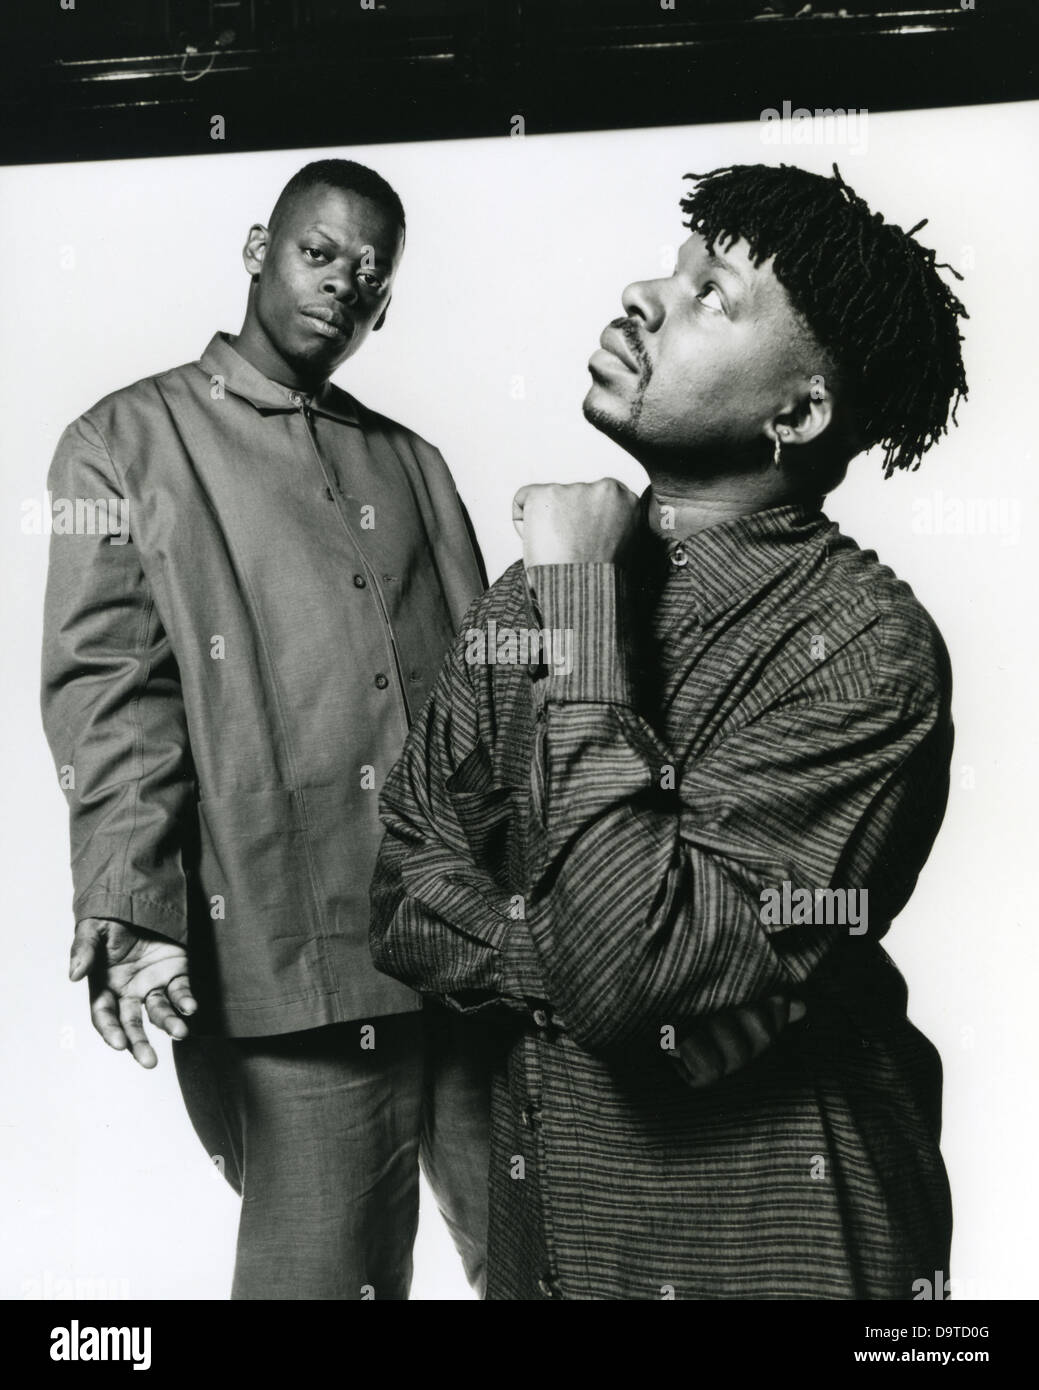 SHOCK 'N' FUORI foto promozionale di noi rap duo circa 1995 Foto Stock